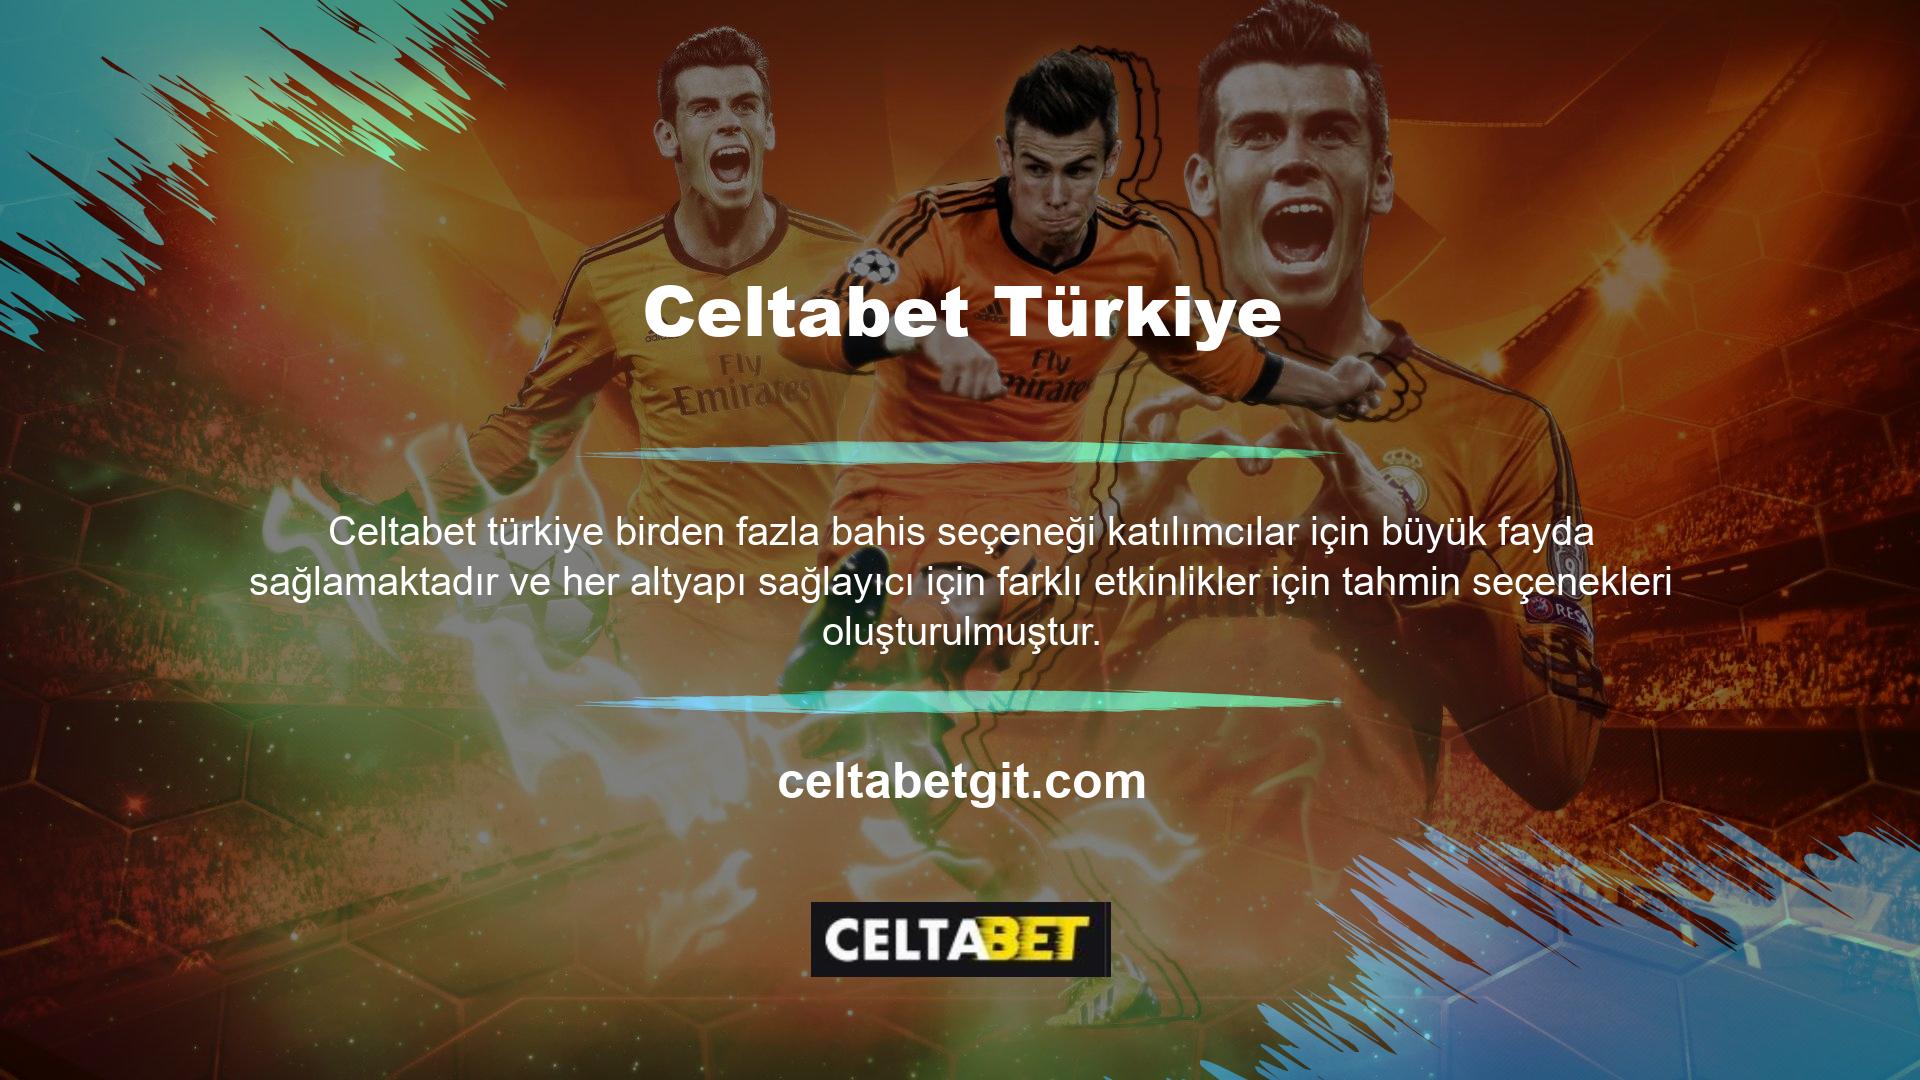 Altyapı dışında, Celtabet hala Türk casino pazarındaki yüksek payı ile tanınmaktadır